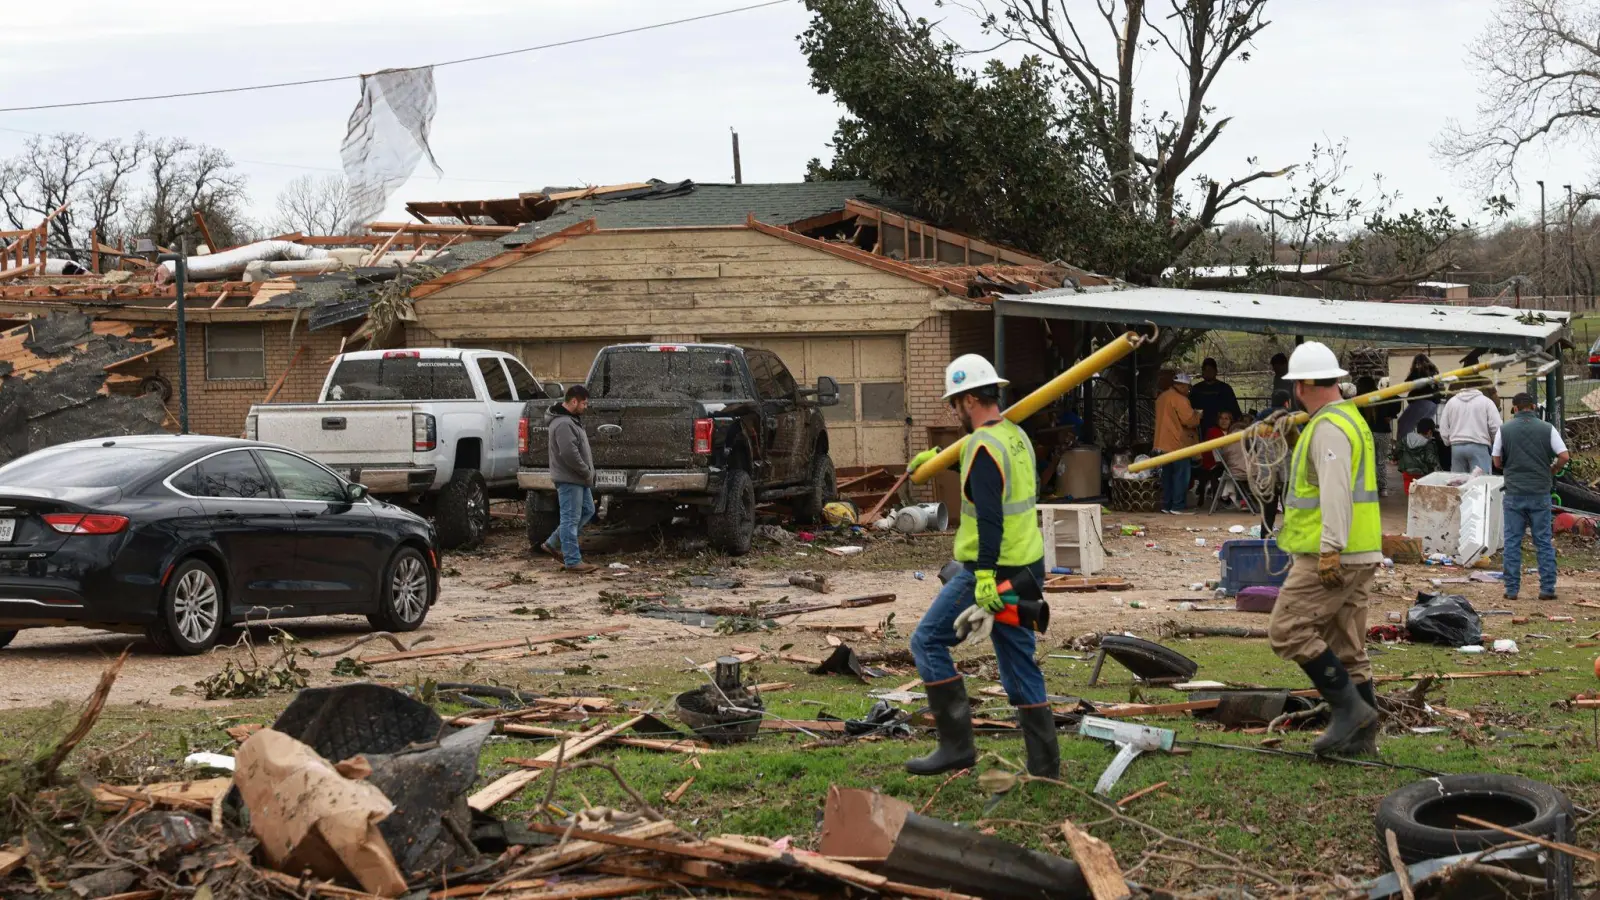 Drei Erwachsene und drei Kinder befanden sich in dem Haus, als kurz nach 7 Uhr morgens ein Tornado durch das Haus fegte. (Foto: Rebecca Slezak/The Dallas Morning News/AP/dpa)